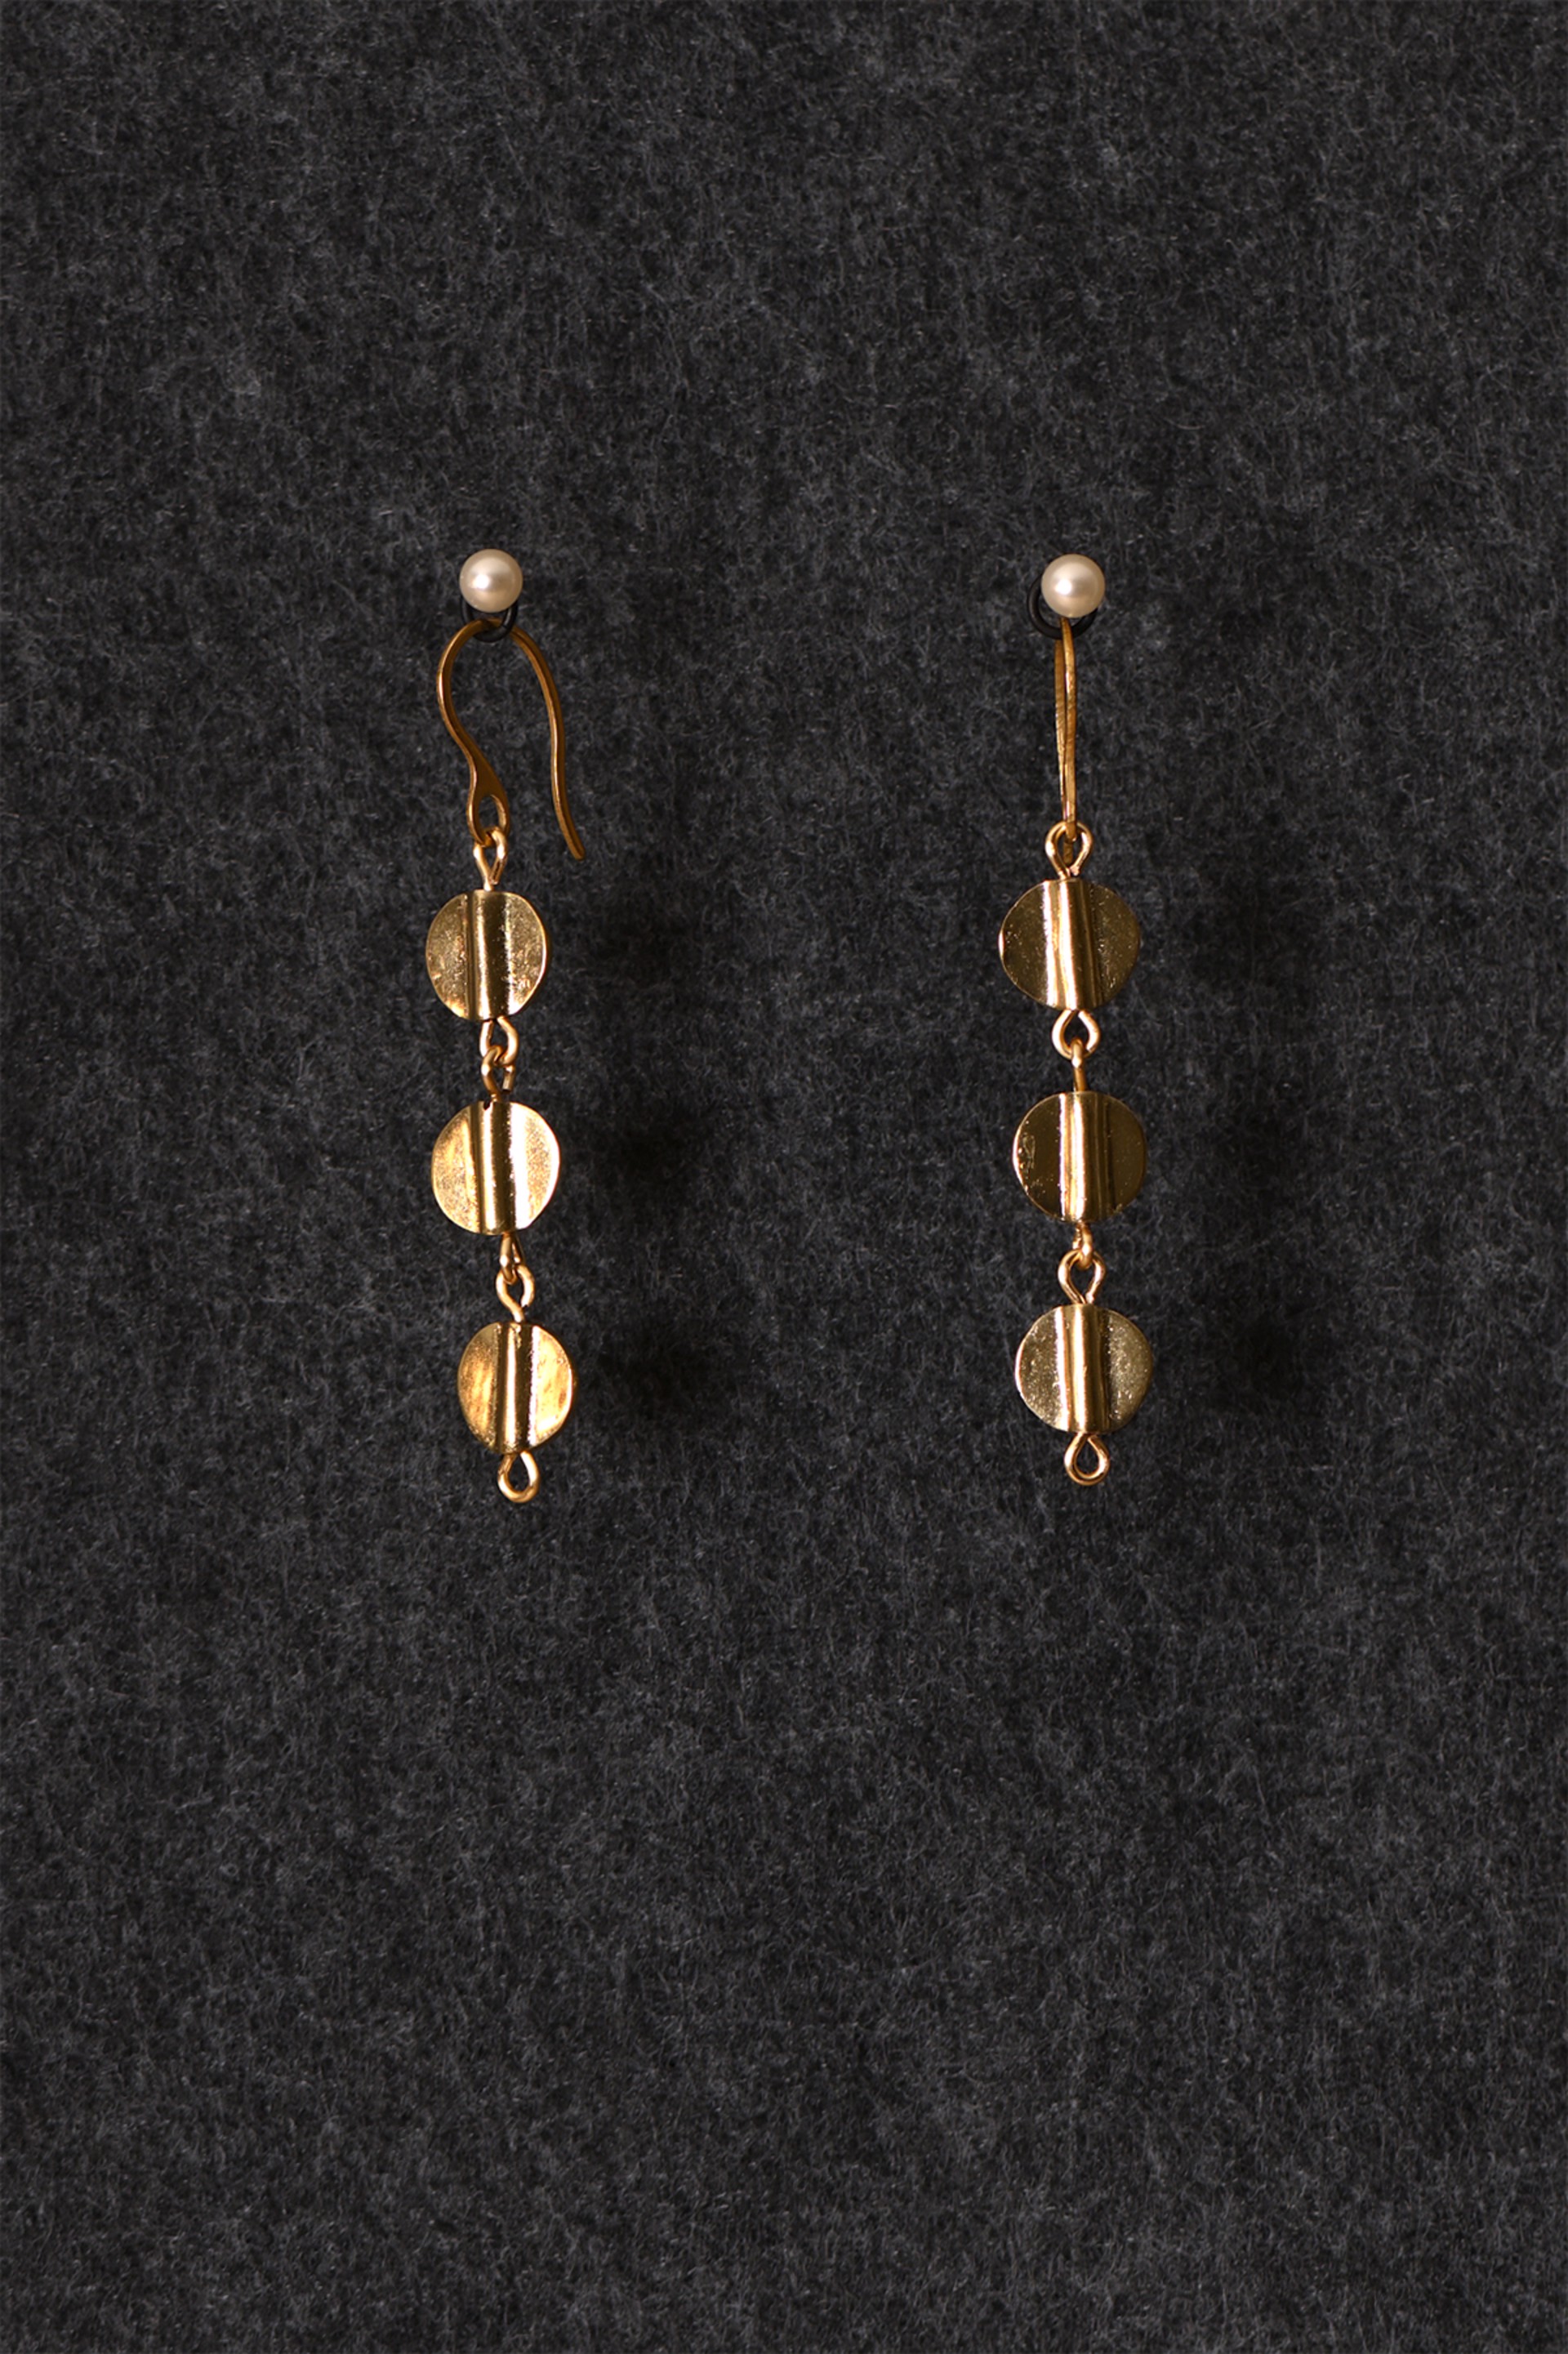 Brass Aspen Earrings by Cameron Johnson